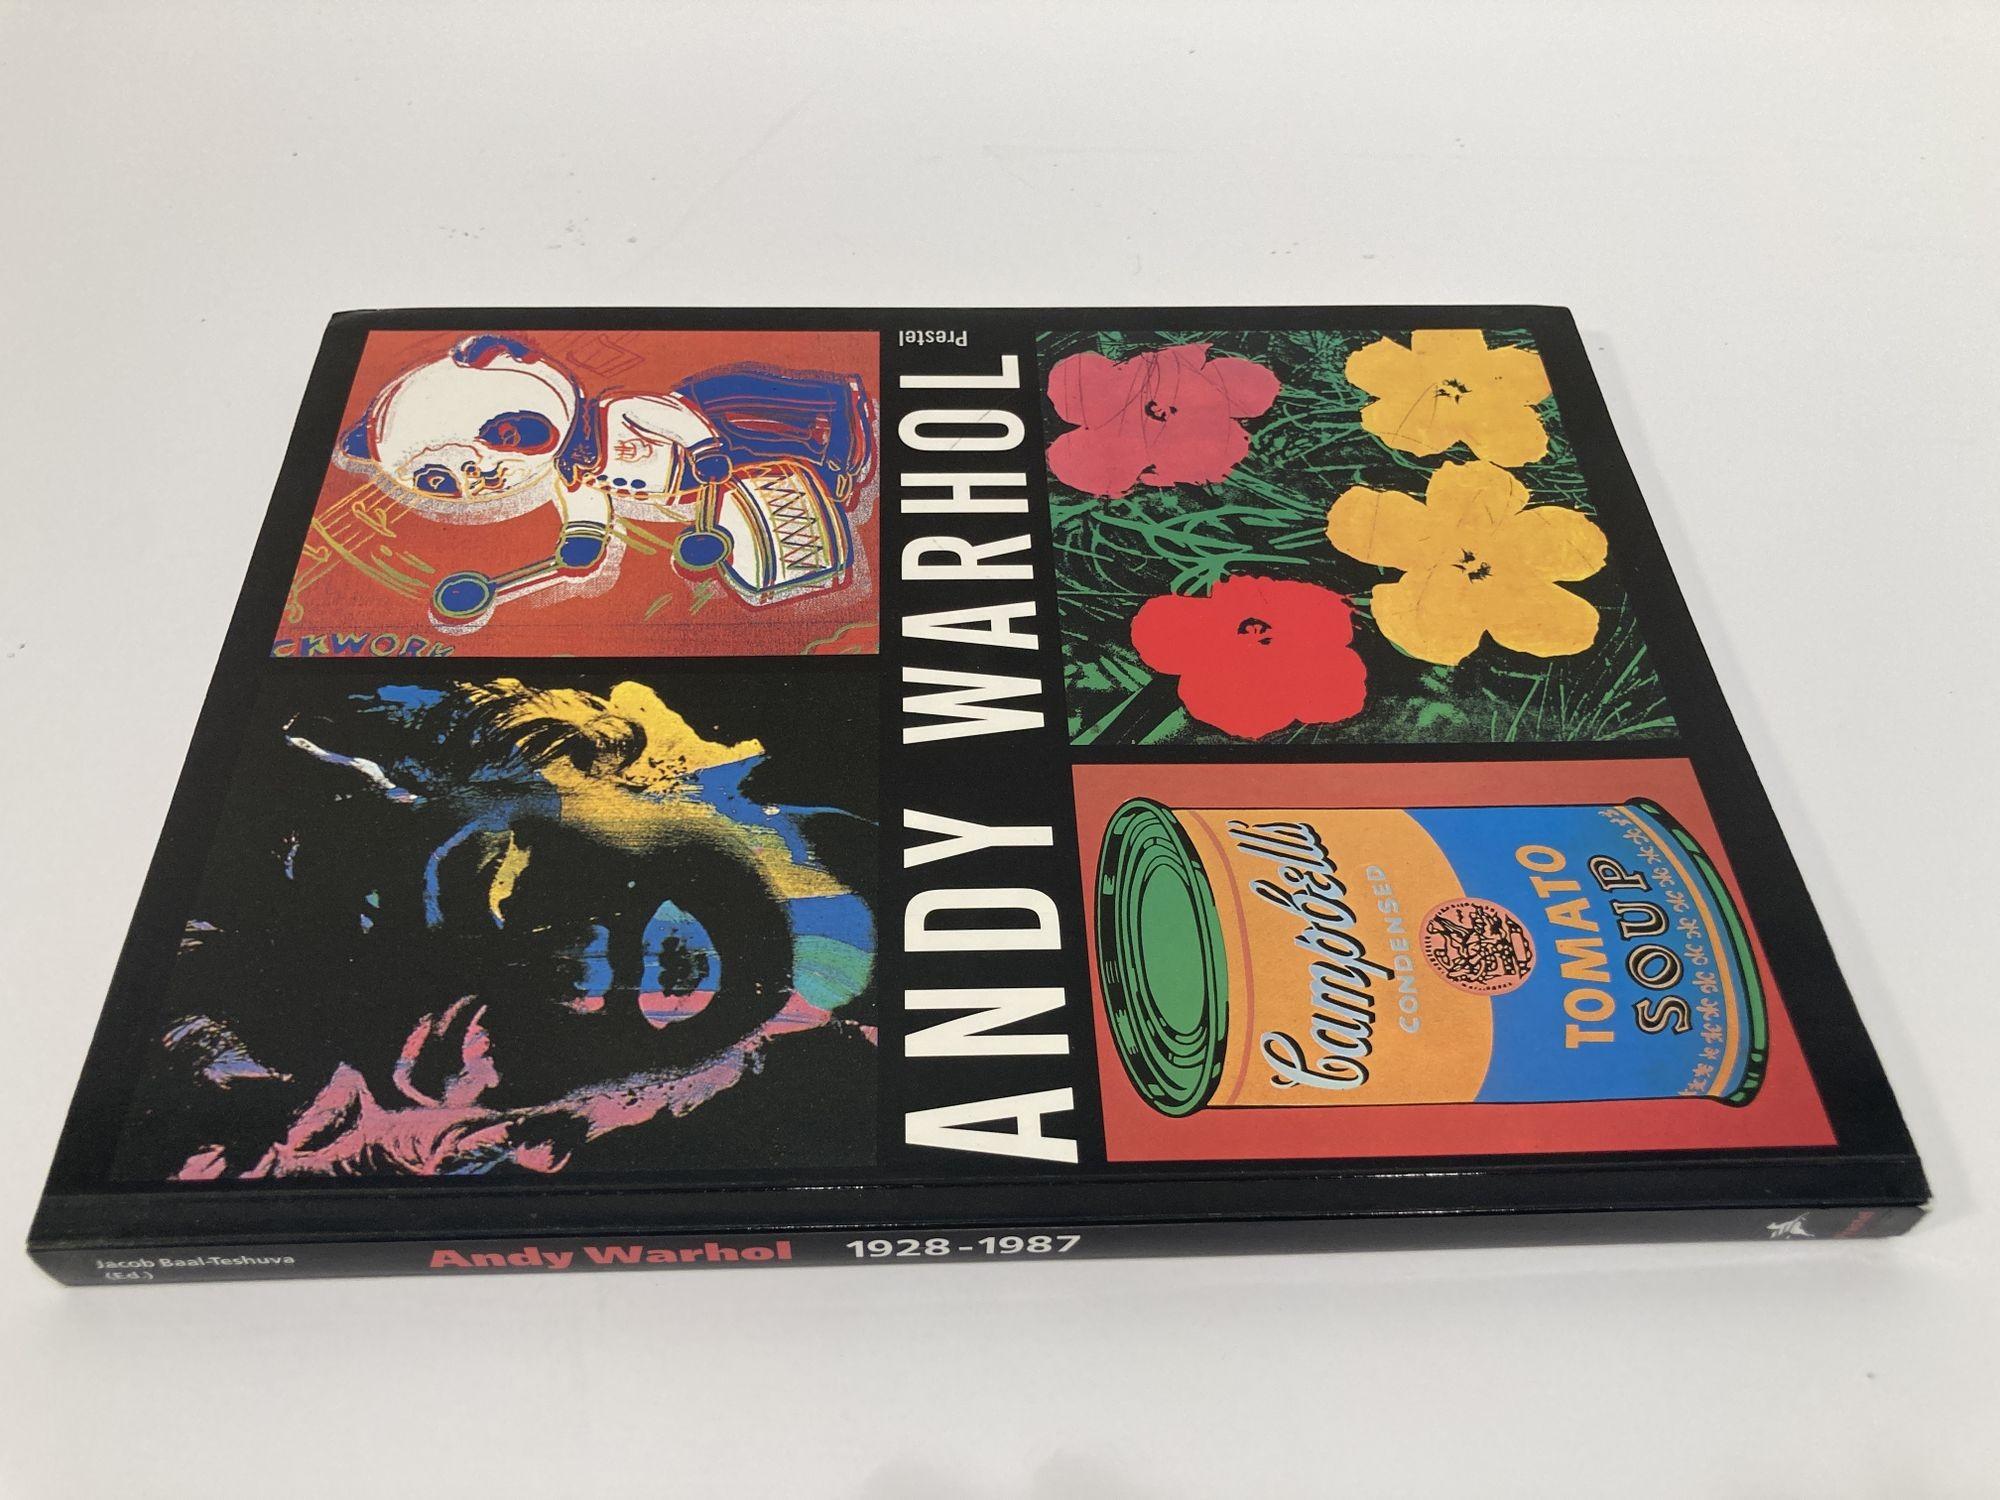 Andy Warhol, 1928-1987
Œuvres des collections de Jose' Mugrabi et d'une société de l'île de Man
Livre de poche parfait -
1er janvier 1993 par Jacob-Baal-Teshuva.





L'art d'Andy Warhol continue de surprendre même les admirateurs